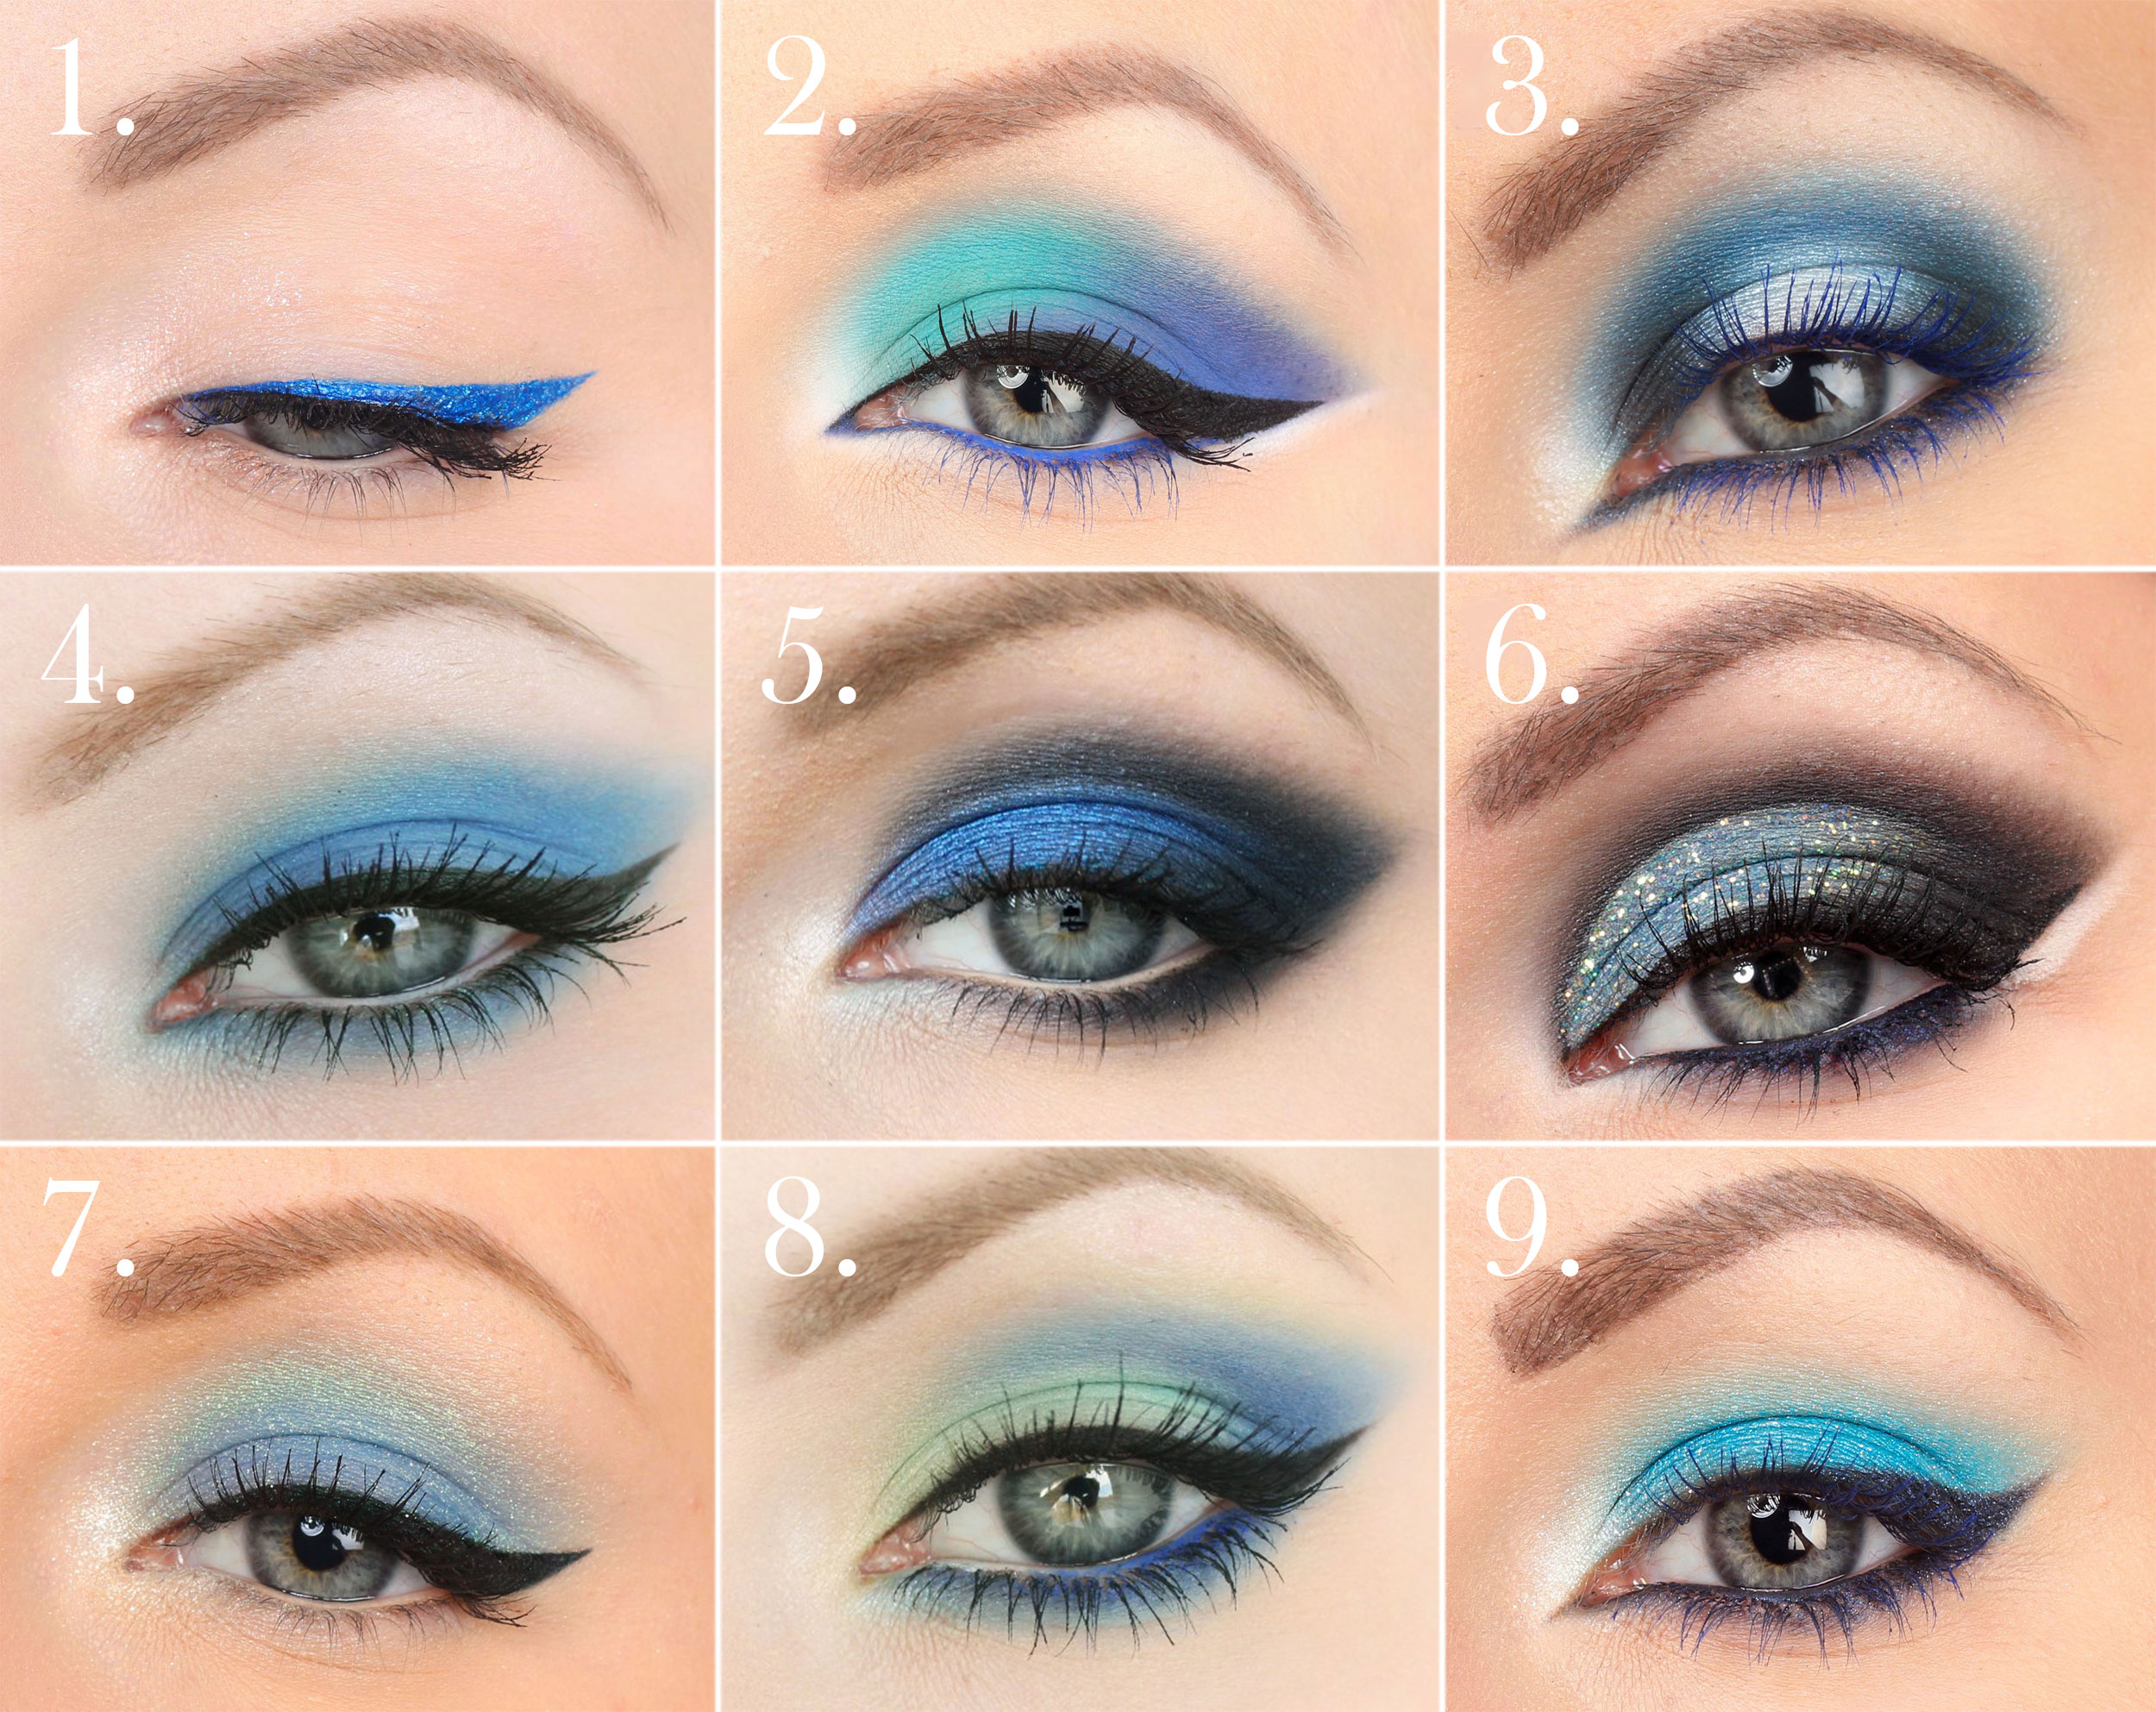 Стилевые варианты макияжа для голубых глаз: восточный, нюд, смоки айс и другие